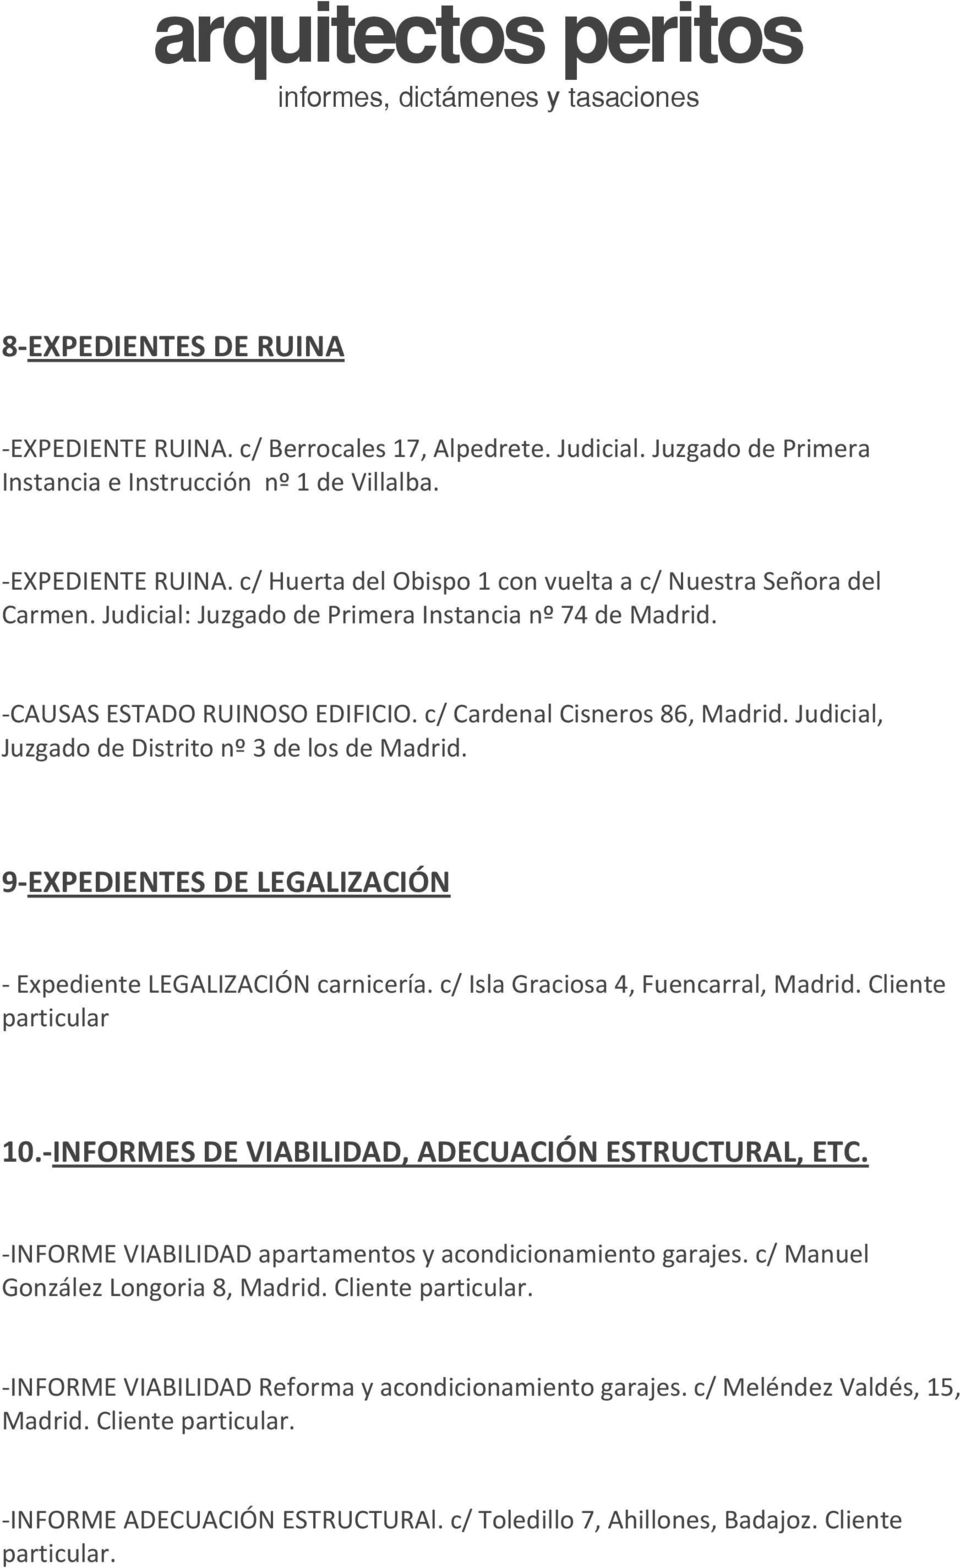 9 EXPEDIENTES DE LEGALIZACIÓN Expediente LEGALIZACIÓN carnicería. c/ Isla Graciosa 4, Fuencarral, Madrid. Cliente particular 10. INFORMES DE VIABILIDAD, ADECUACIÓN ESTRUCTURAL, ETC.